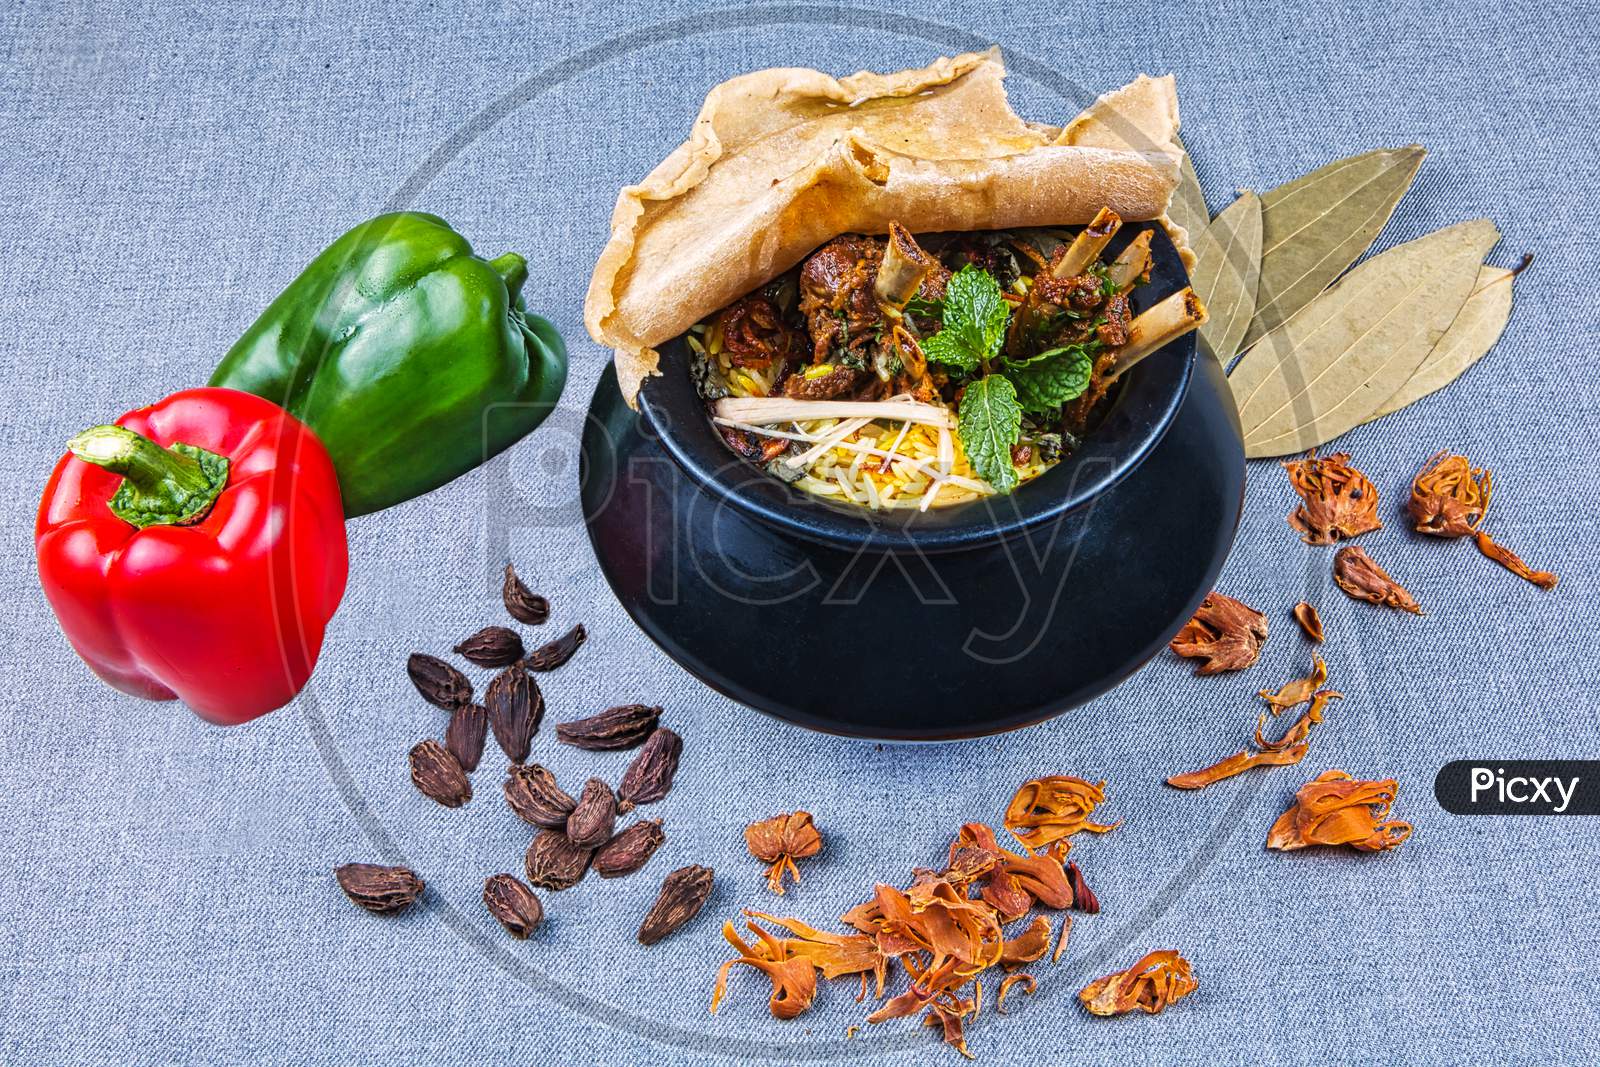 Handi Mutton Biryani With Raw Spices